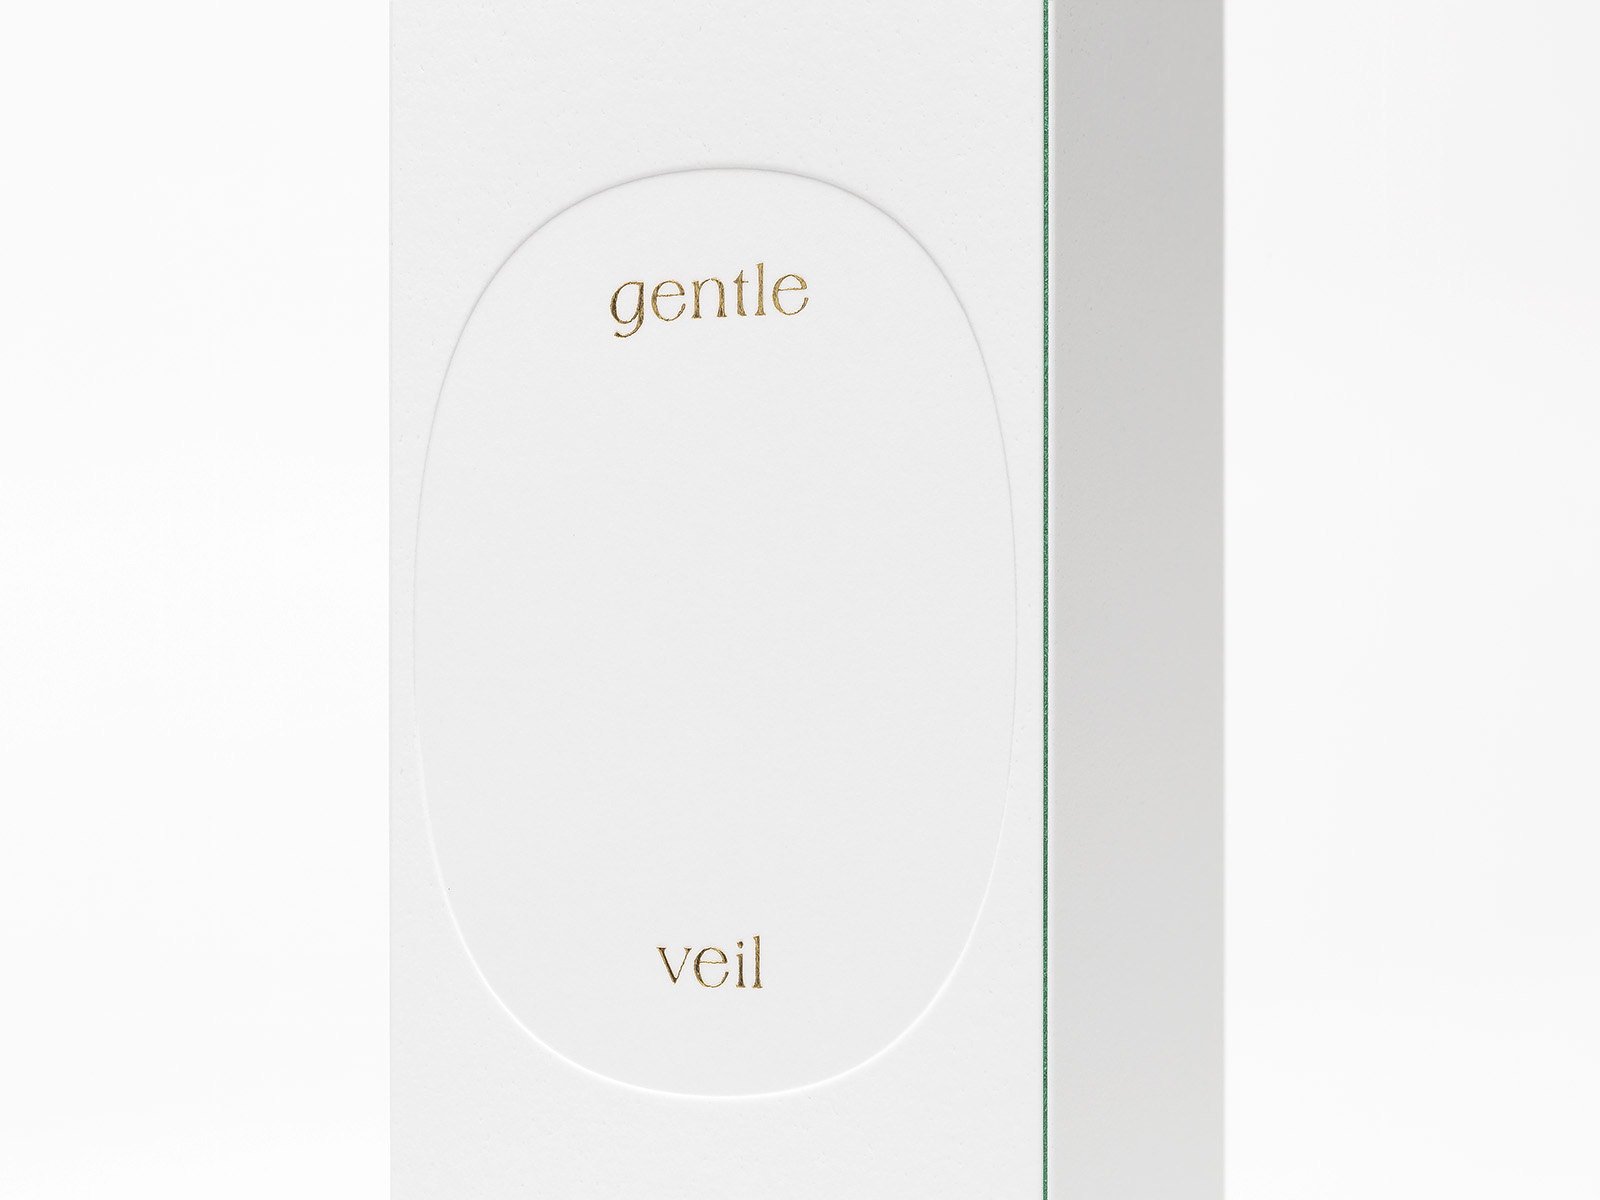 works_gentle veil_02